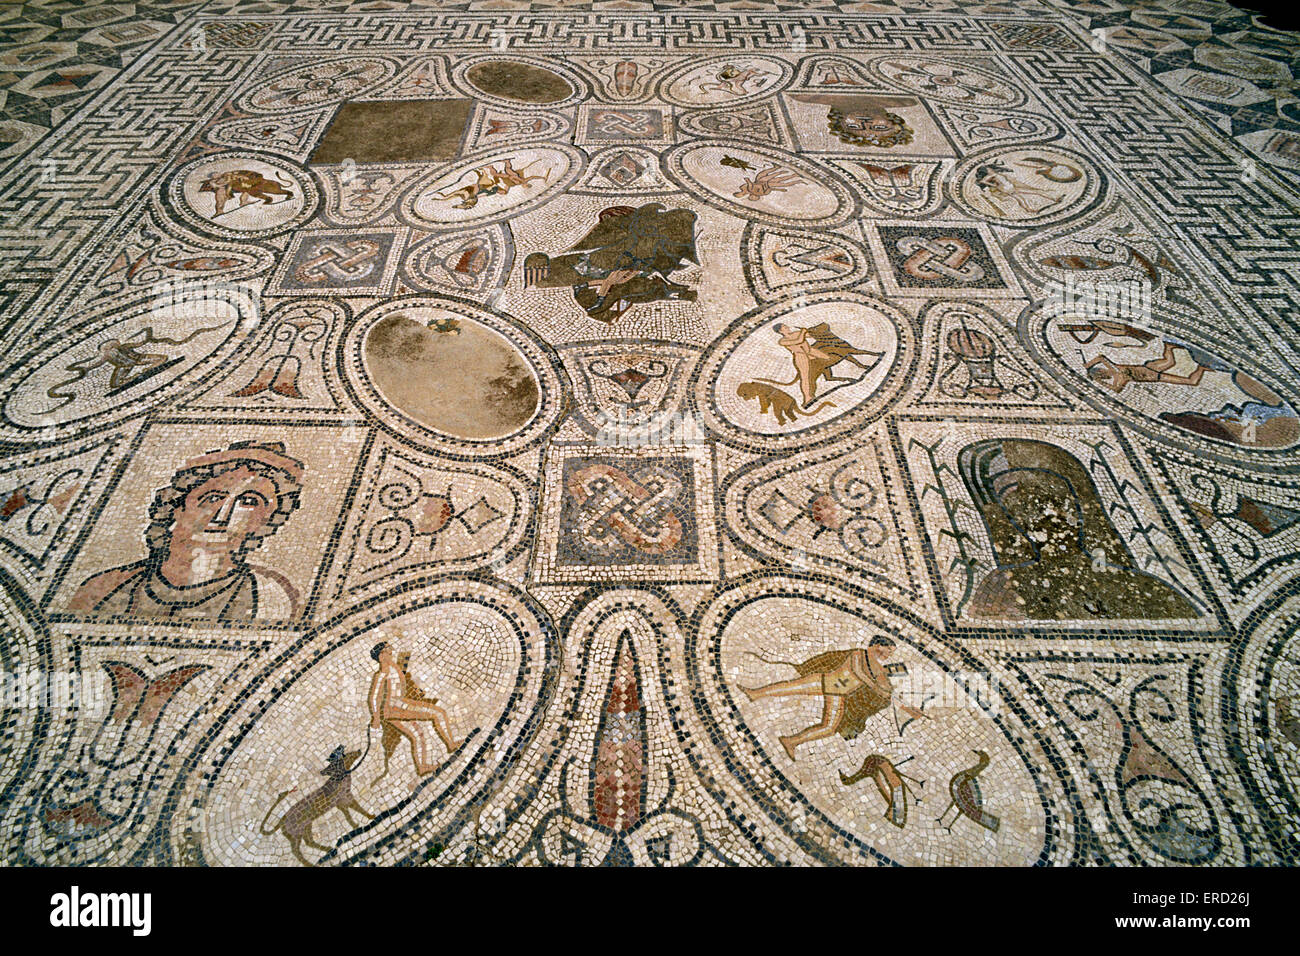 Maroc, Volubilis, Maison des travaux d'Hercule, mosaïque romaine Banque D'Images